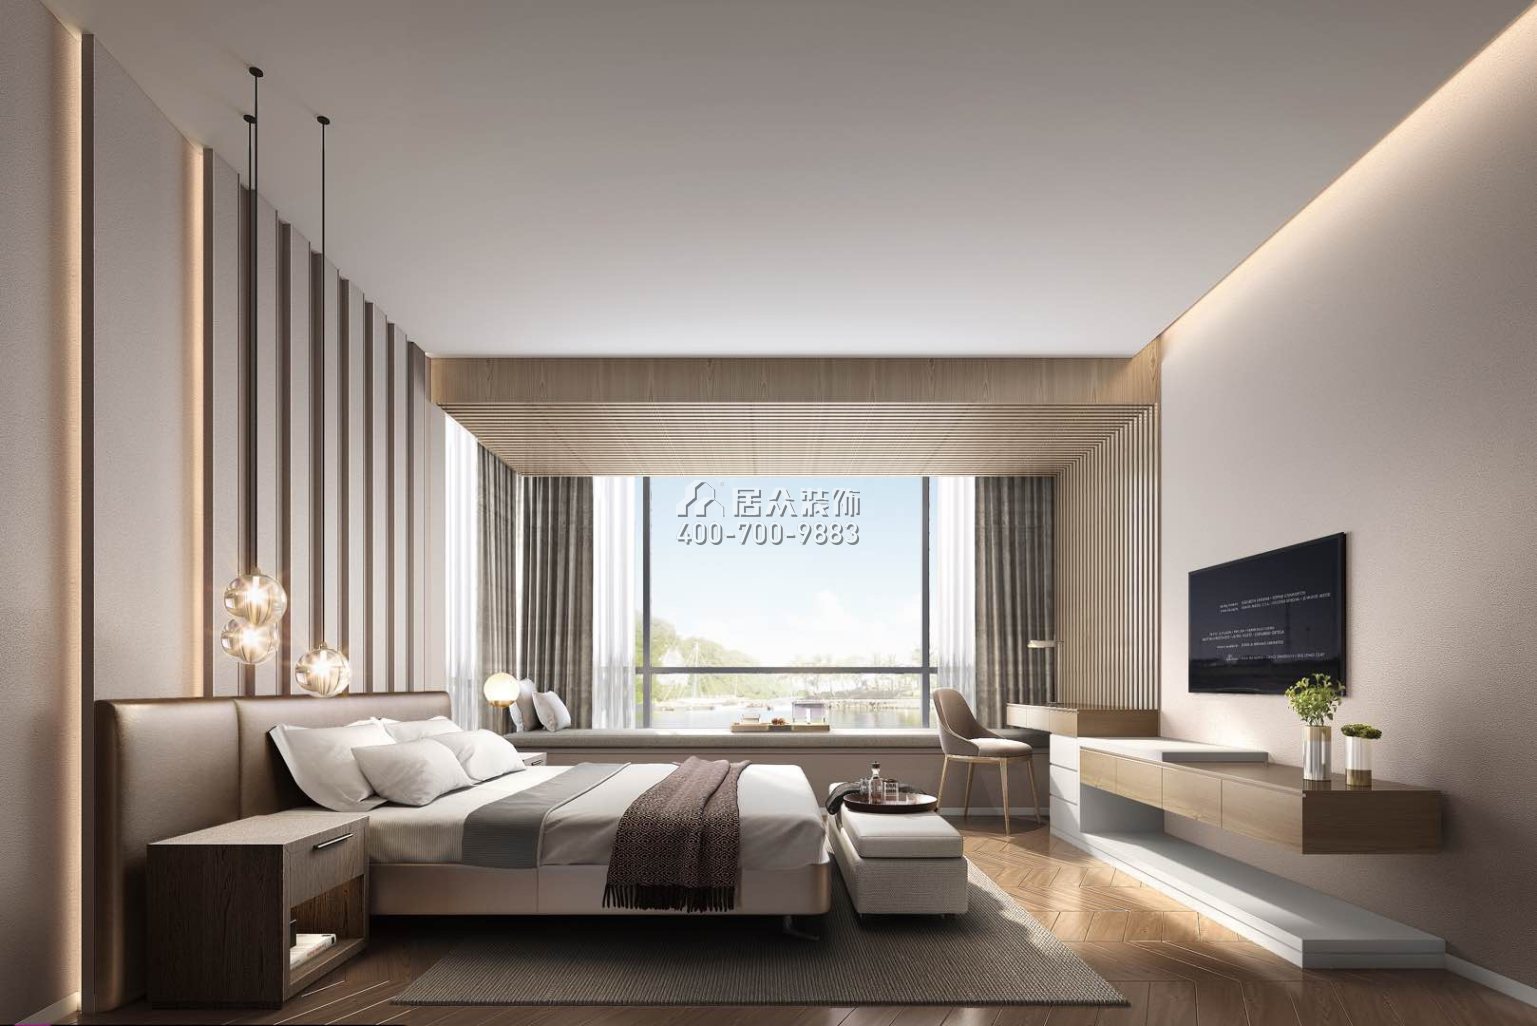 翡翠海岸花园177平方米现代简约风格平层户型卧室装修效果图